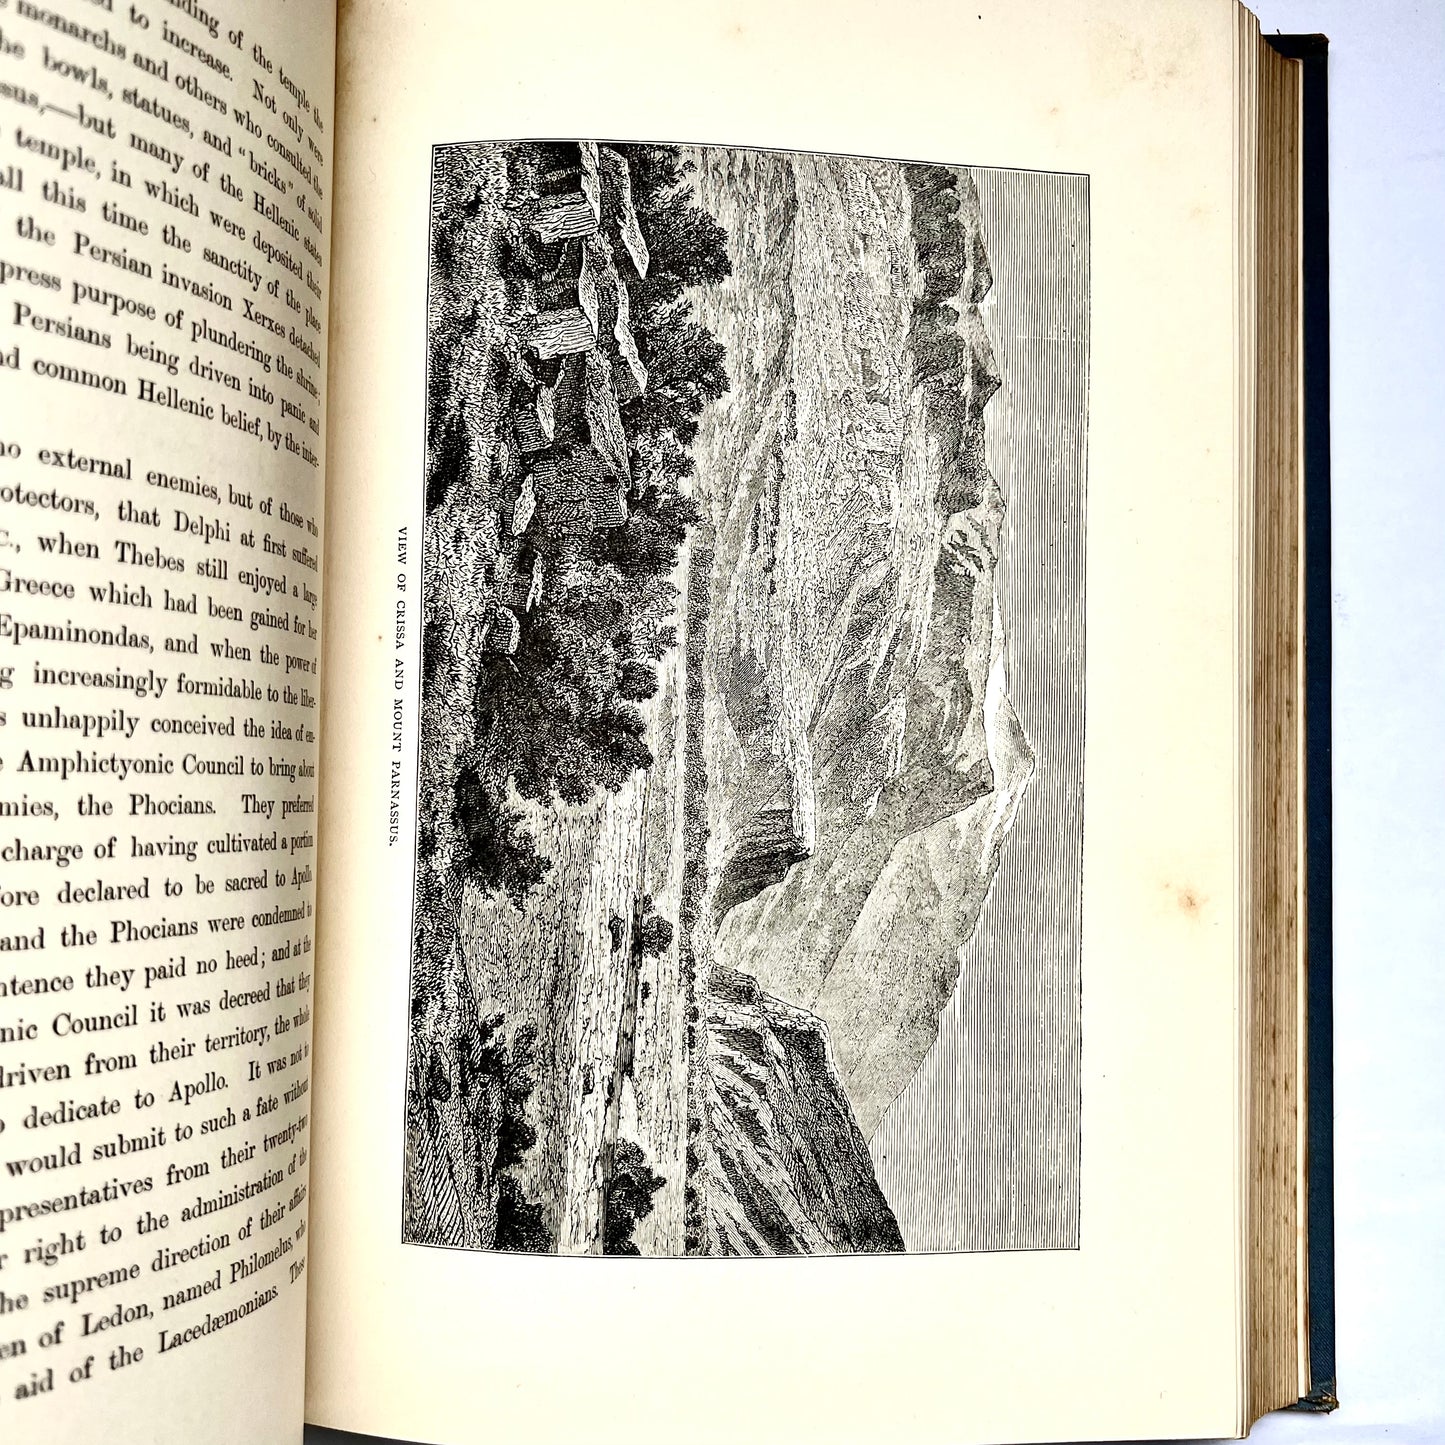 查尔斯·亨利·汉森 (Charles Henry Hanson) 所著的 19 世纪晚期古物卷《希腊土地描述和插图》第 1 版。